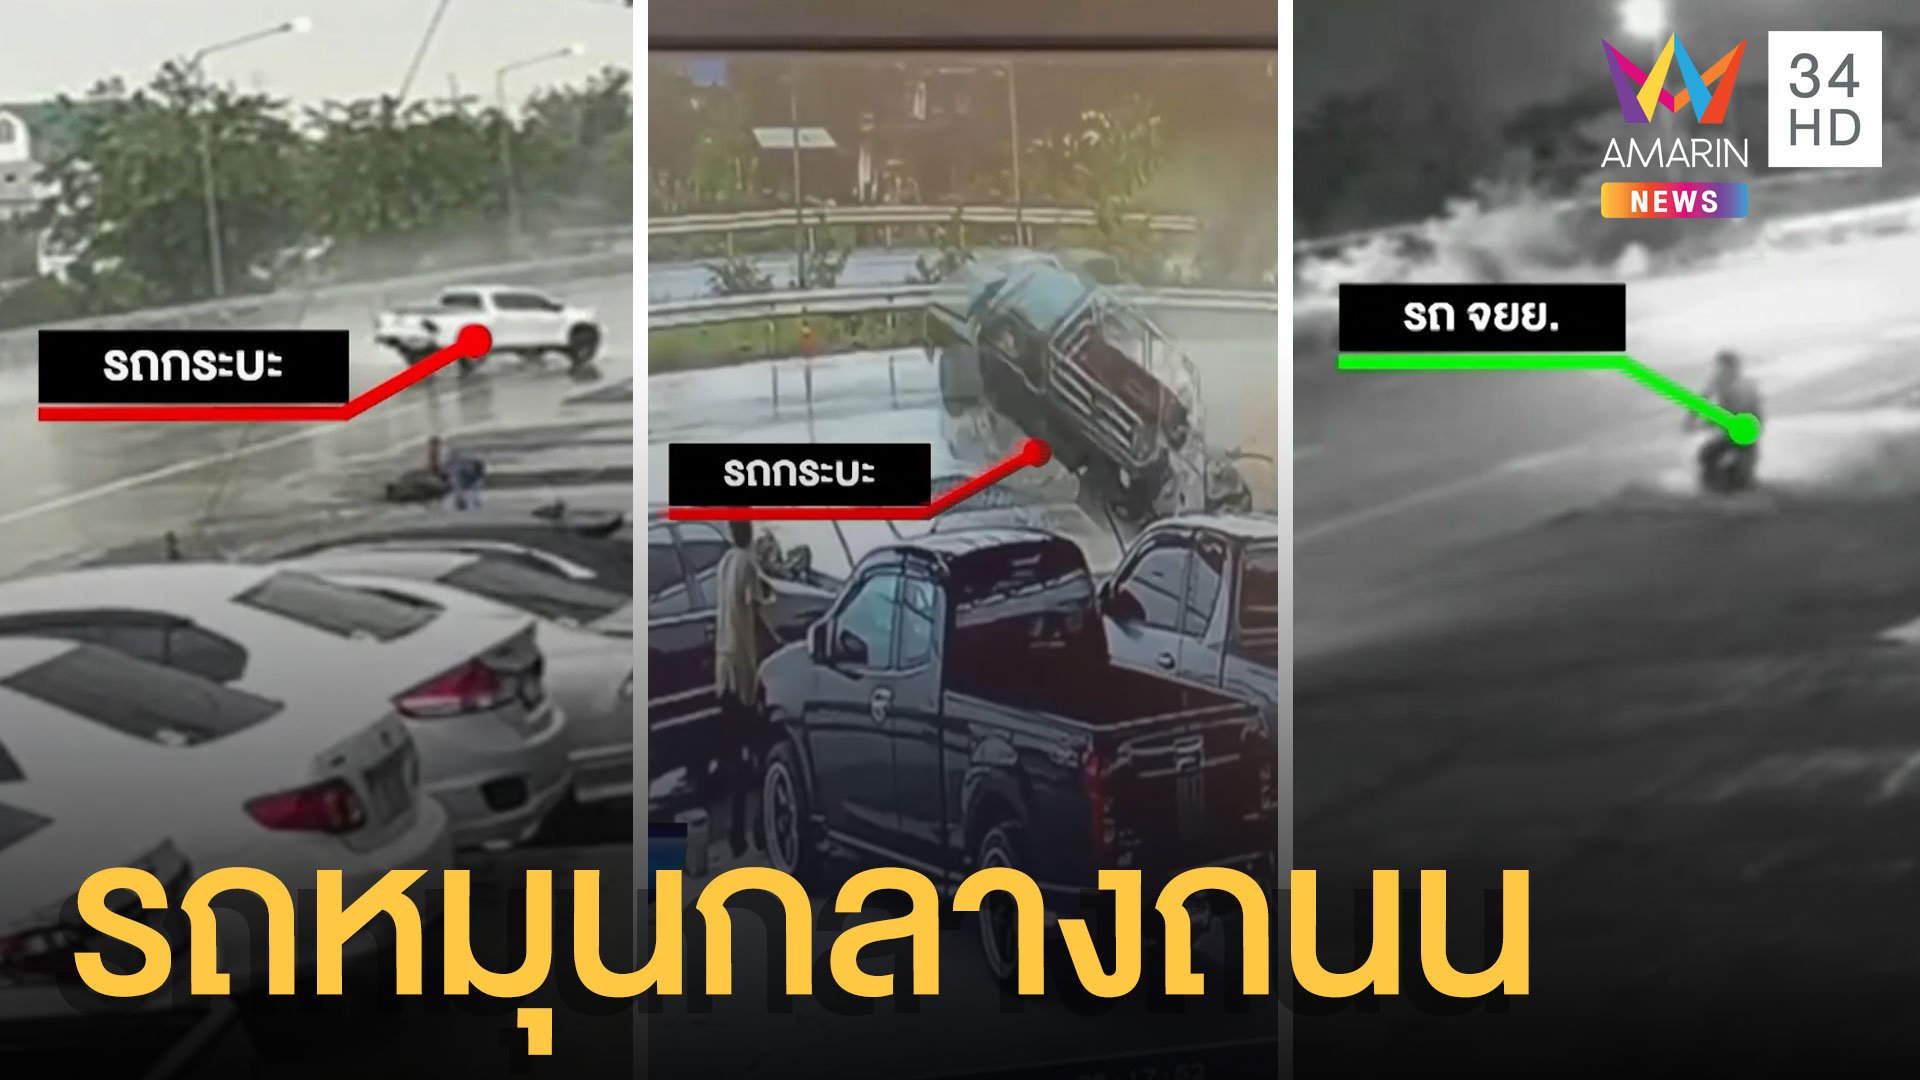 ฝนตกถนนลื่น รถเสียหลักหมุนกลางถนนหลายคัน | ข่าวเที่ยงอมรินทร์ | 31 ส.ค. 64 | AMARIN TVHD34